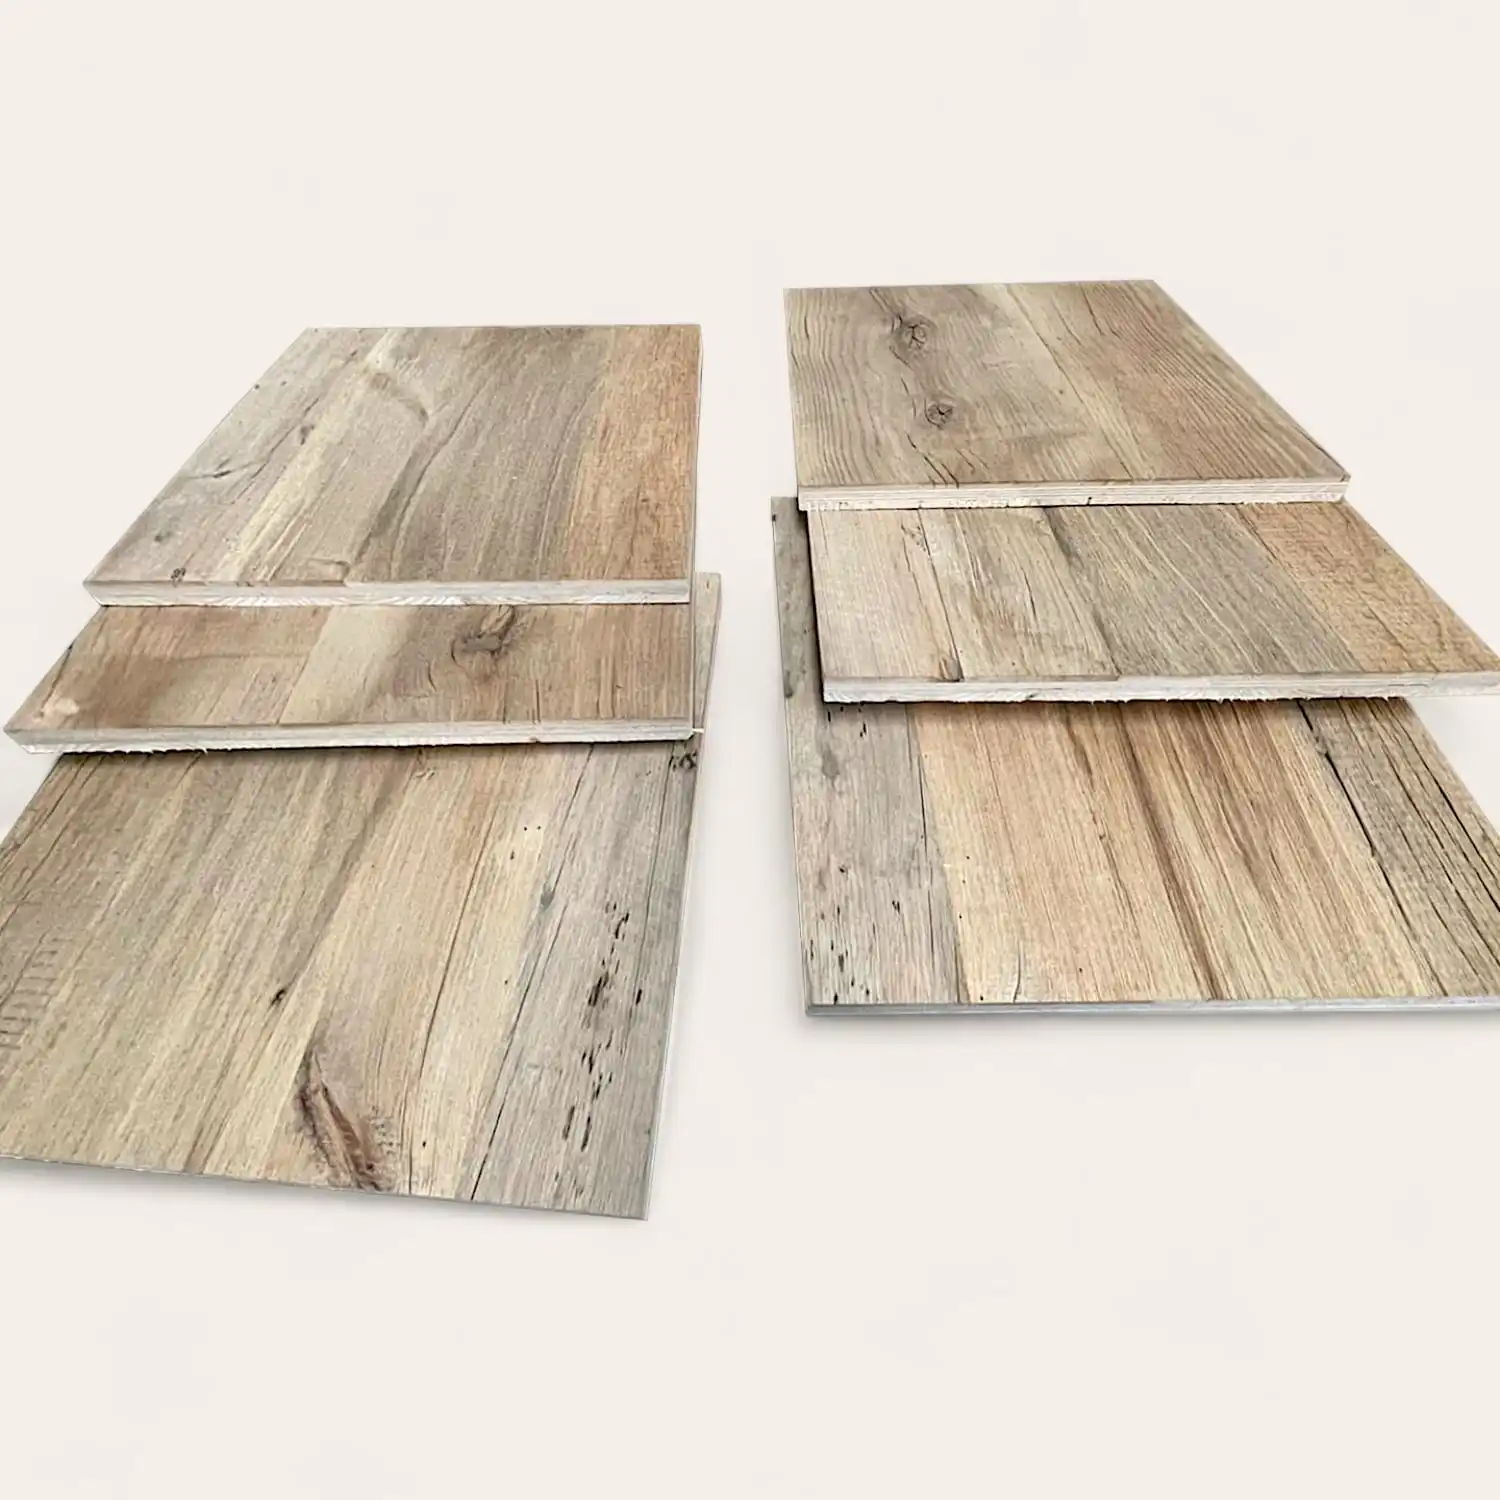  Trois échantillons de parquet vieux bois disposés sur une surface blanche, présentant différents motifs et couleurs de grain de bois. 